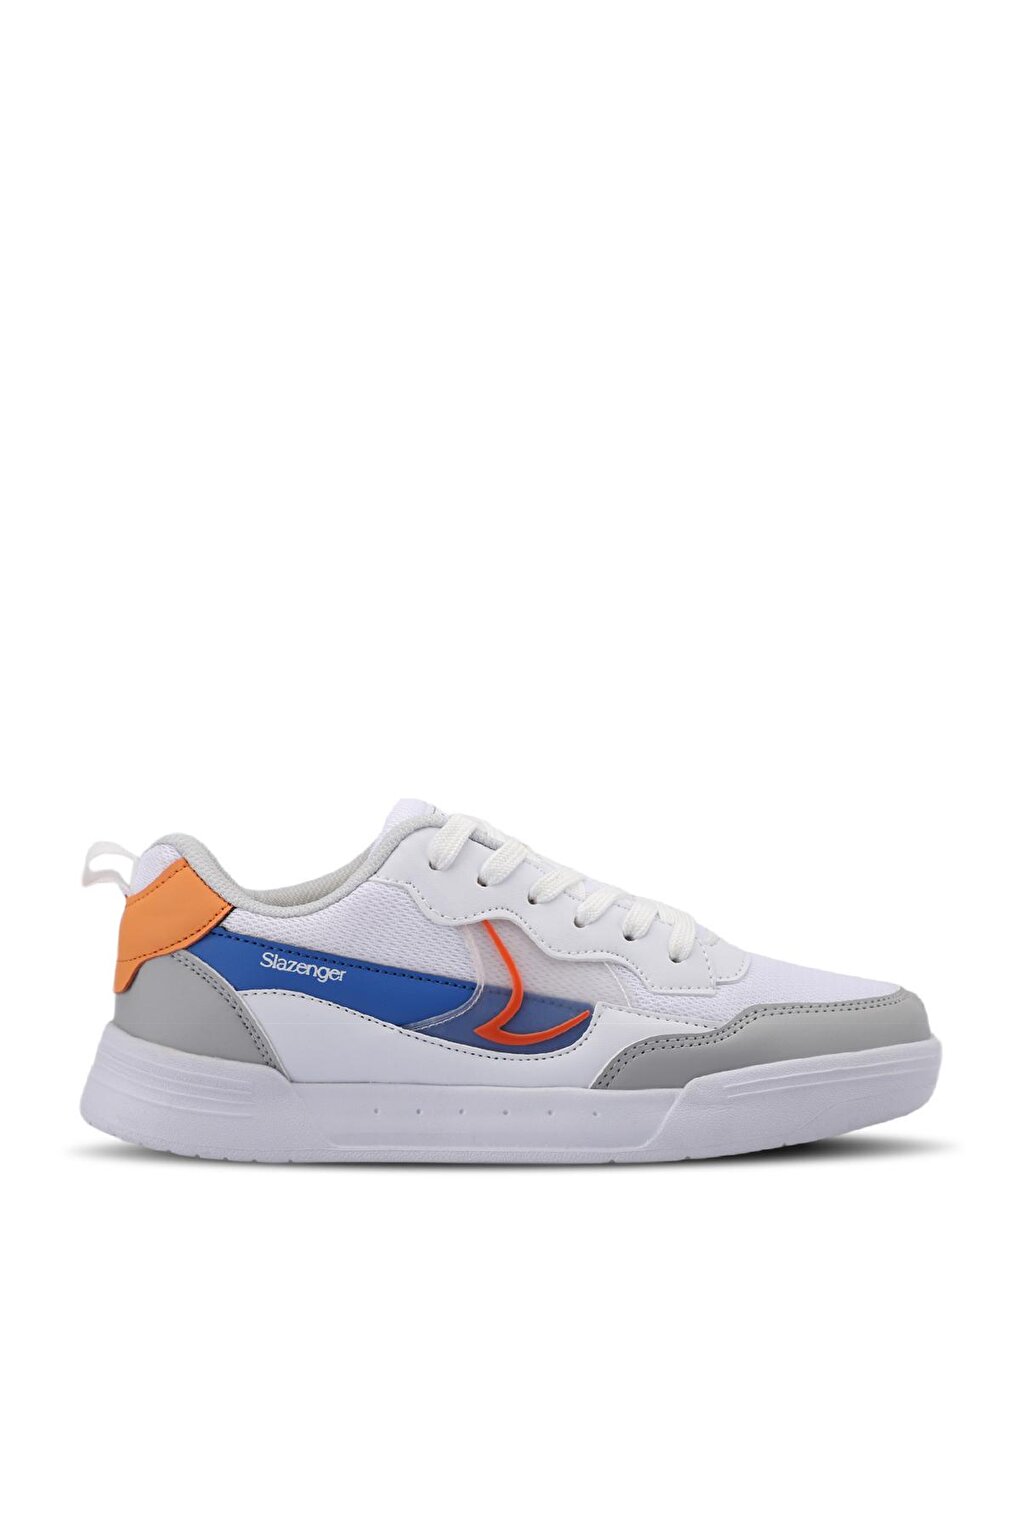 BARBRO Sneaker Женская обувь Белый/Оранжевый SLAZENGER комплект мебели бело оранжевый